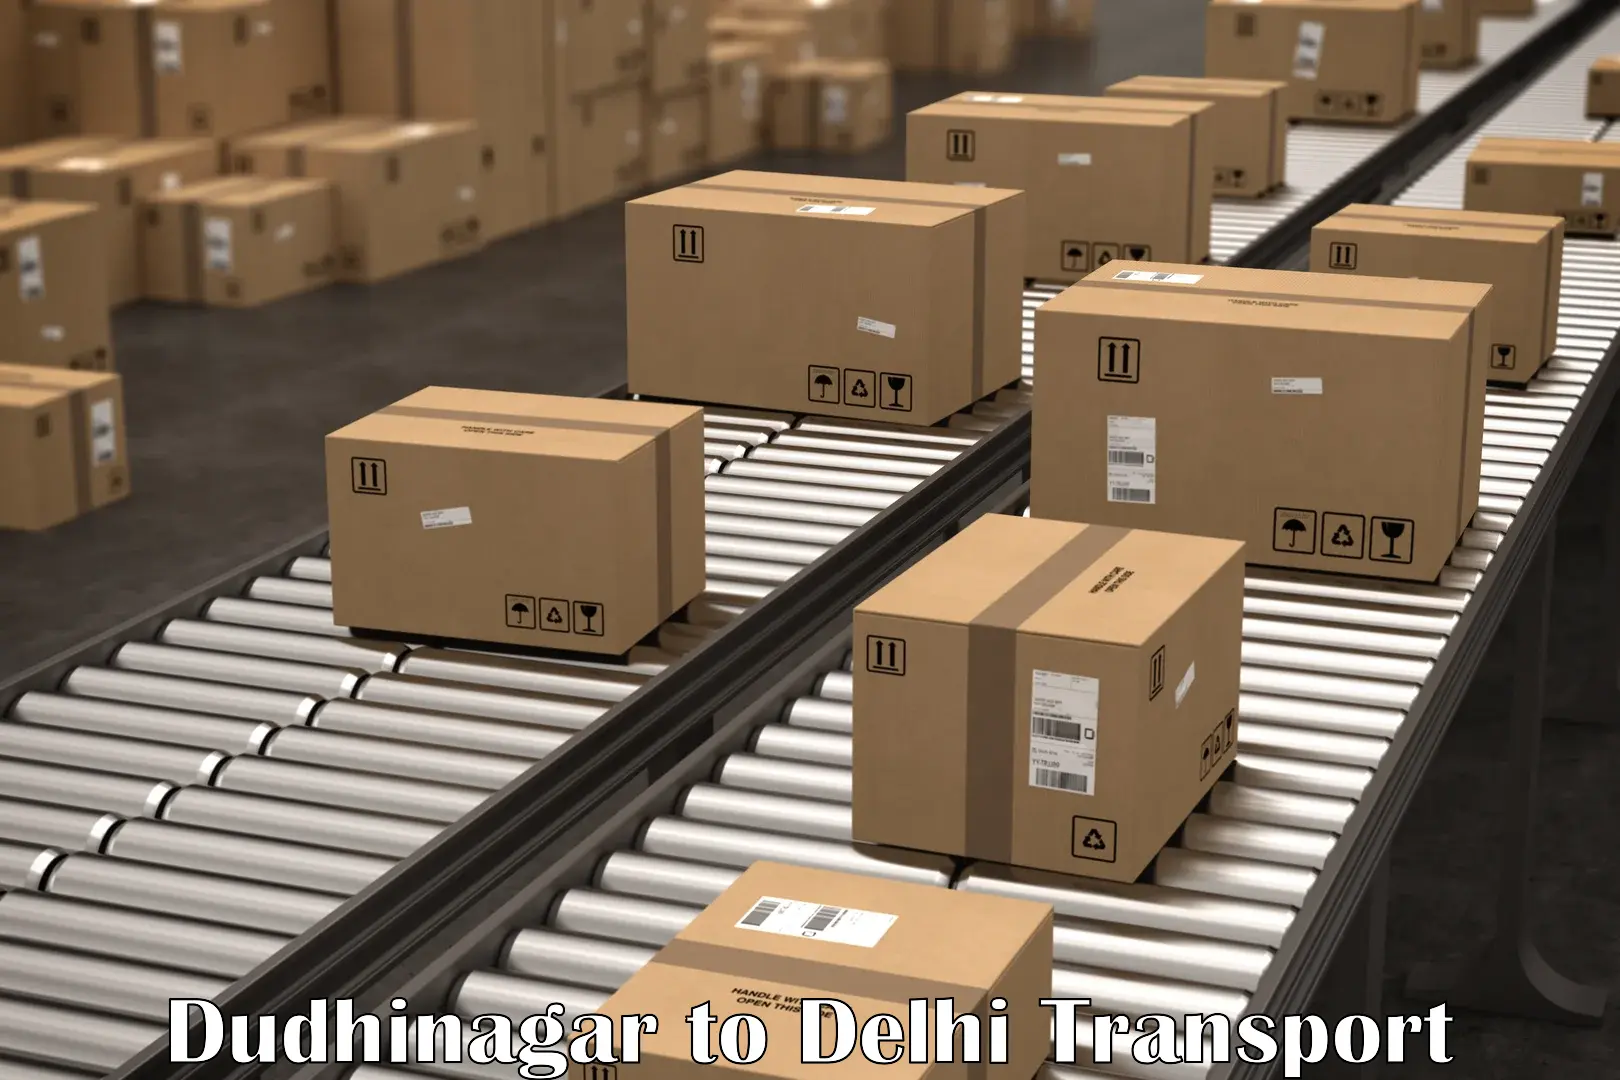 International cargo transportation services Dudhinagar to University of Delhi